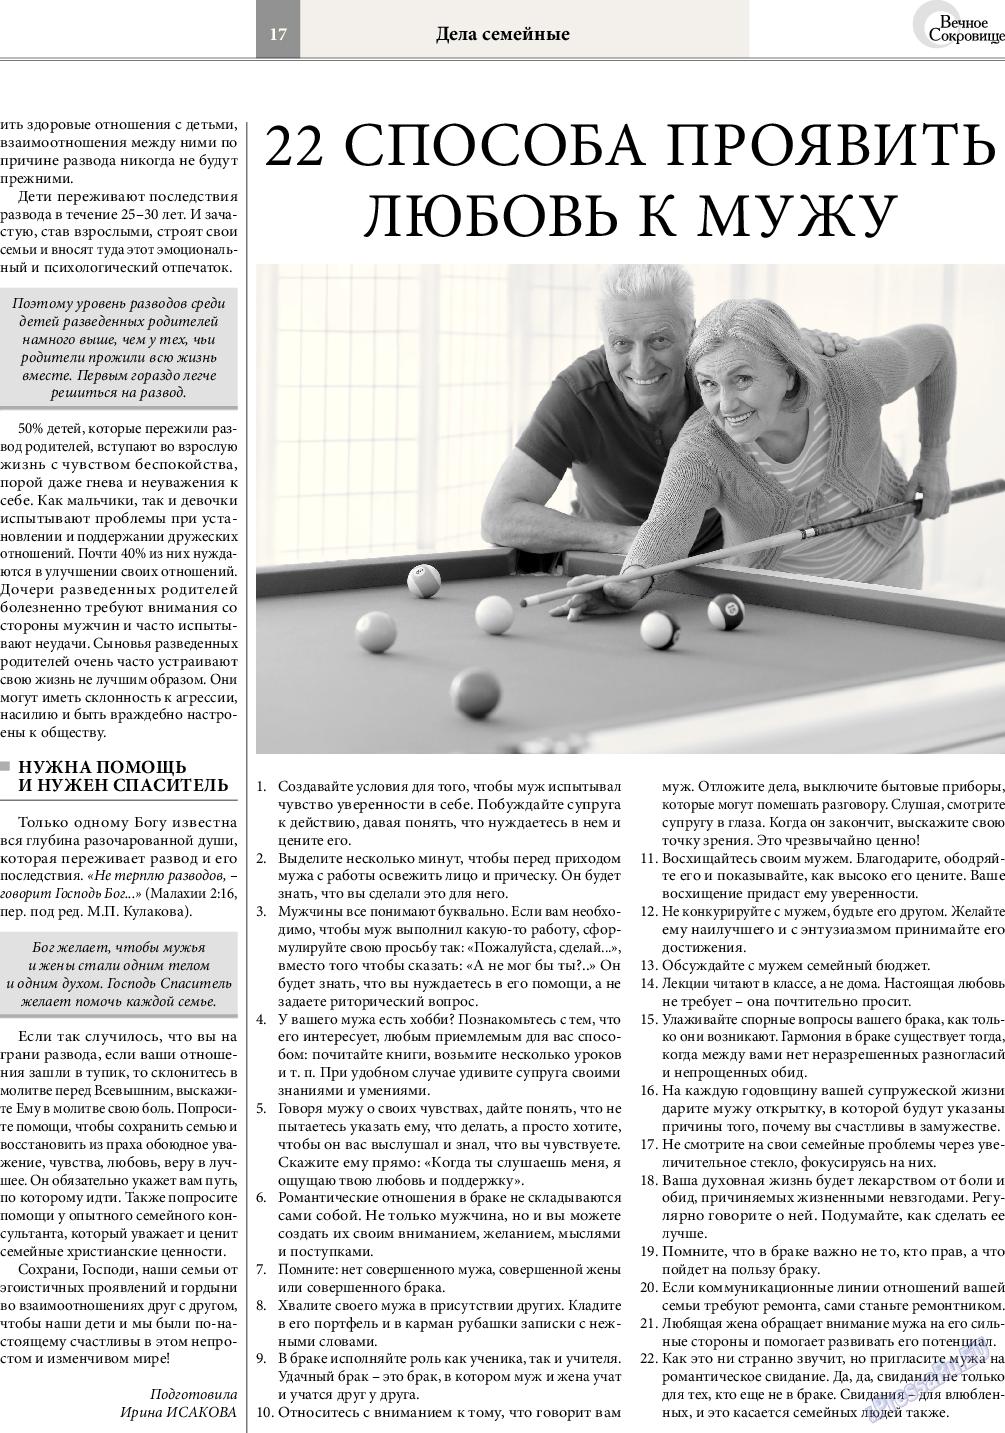 Вечное сокровище, газета. 2017 №3 стр.17